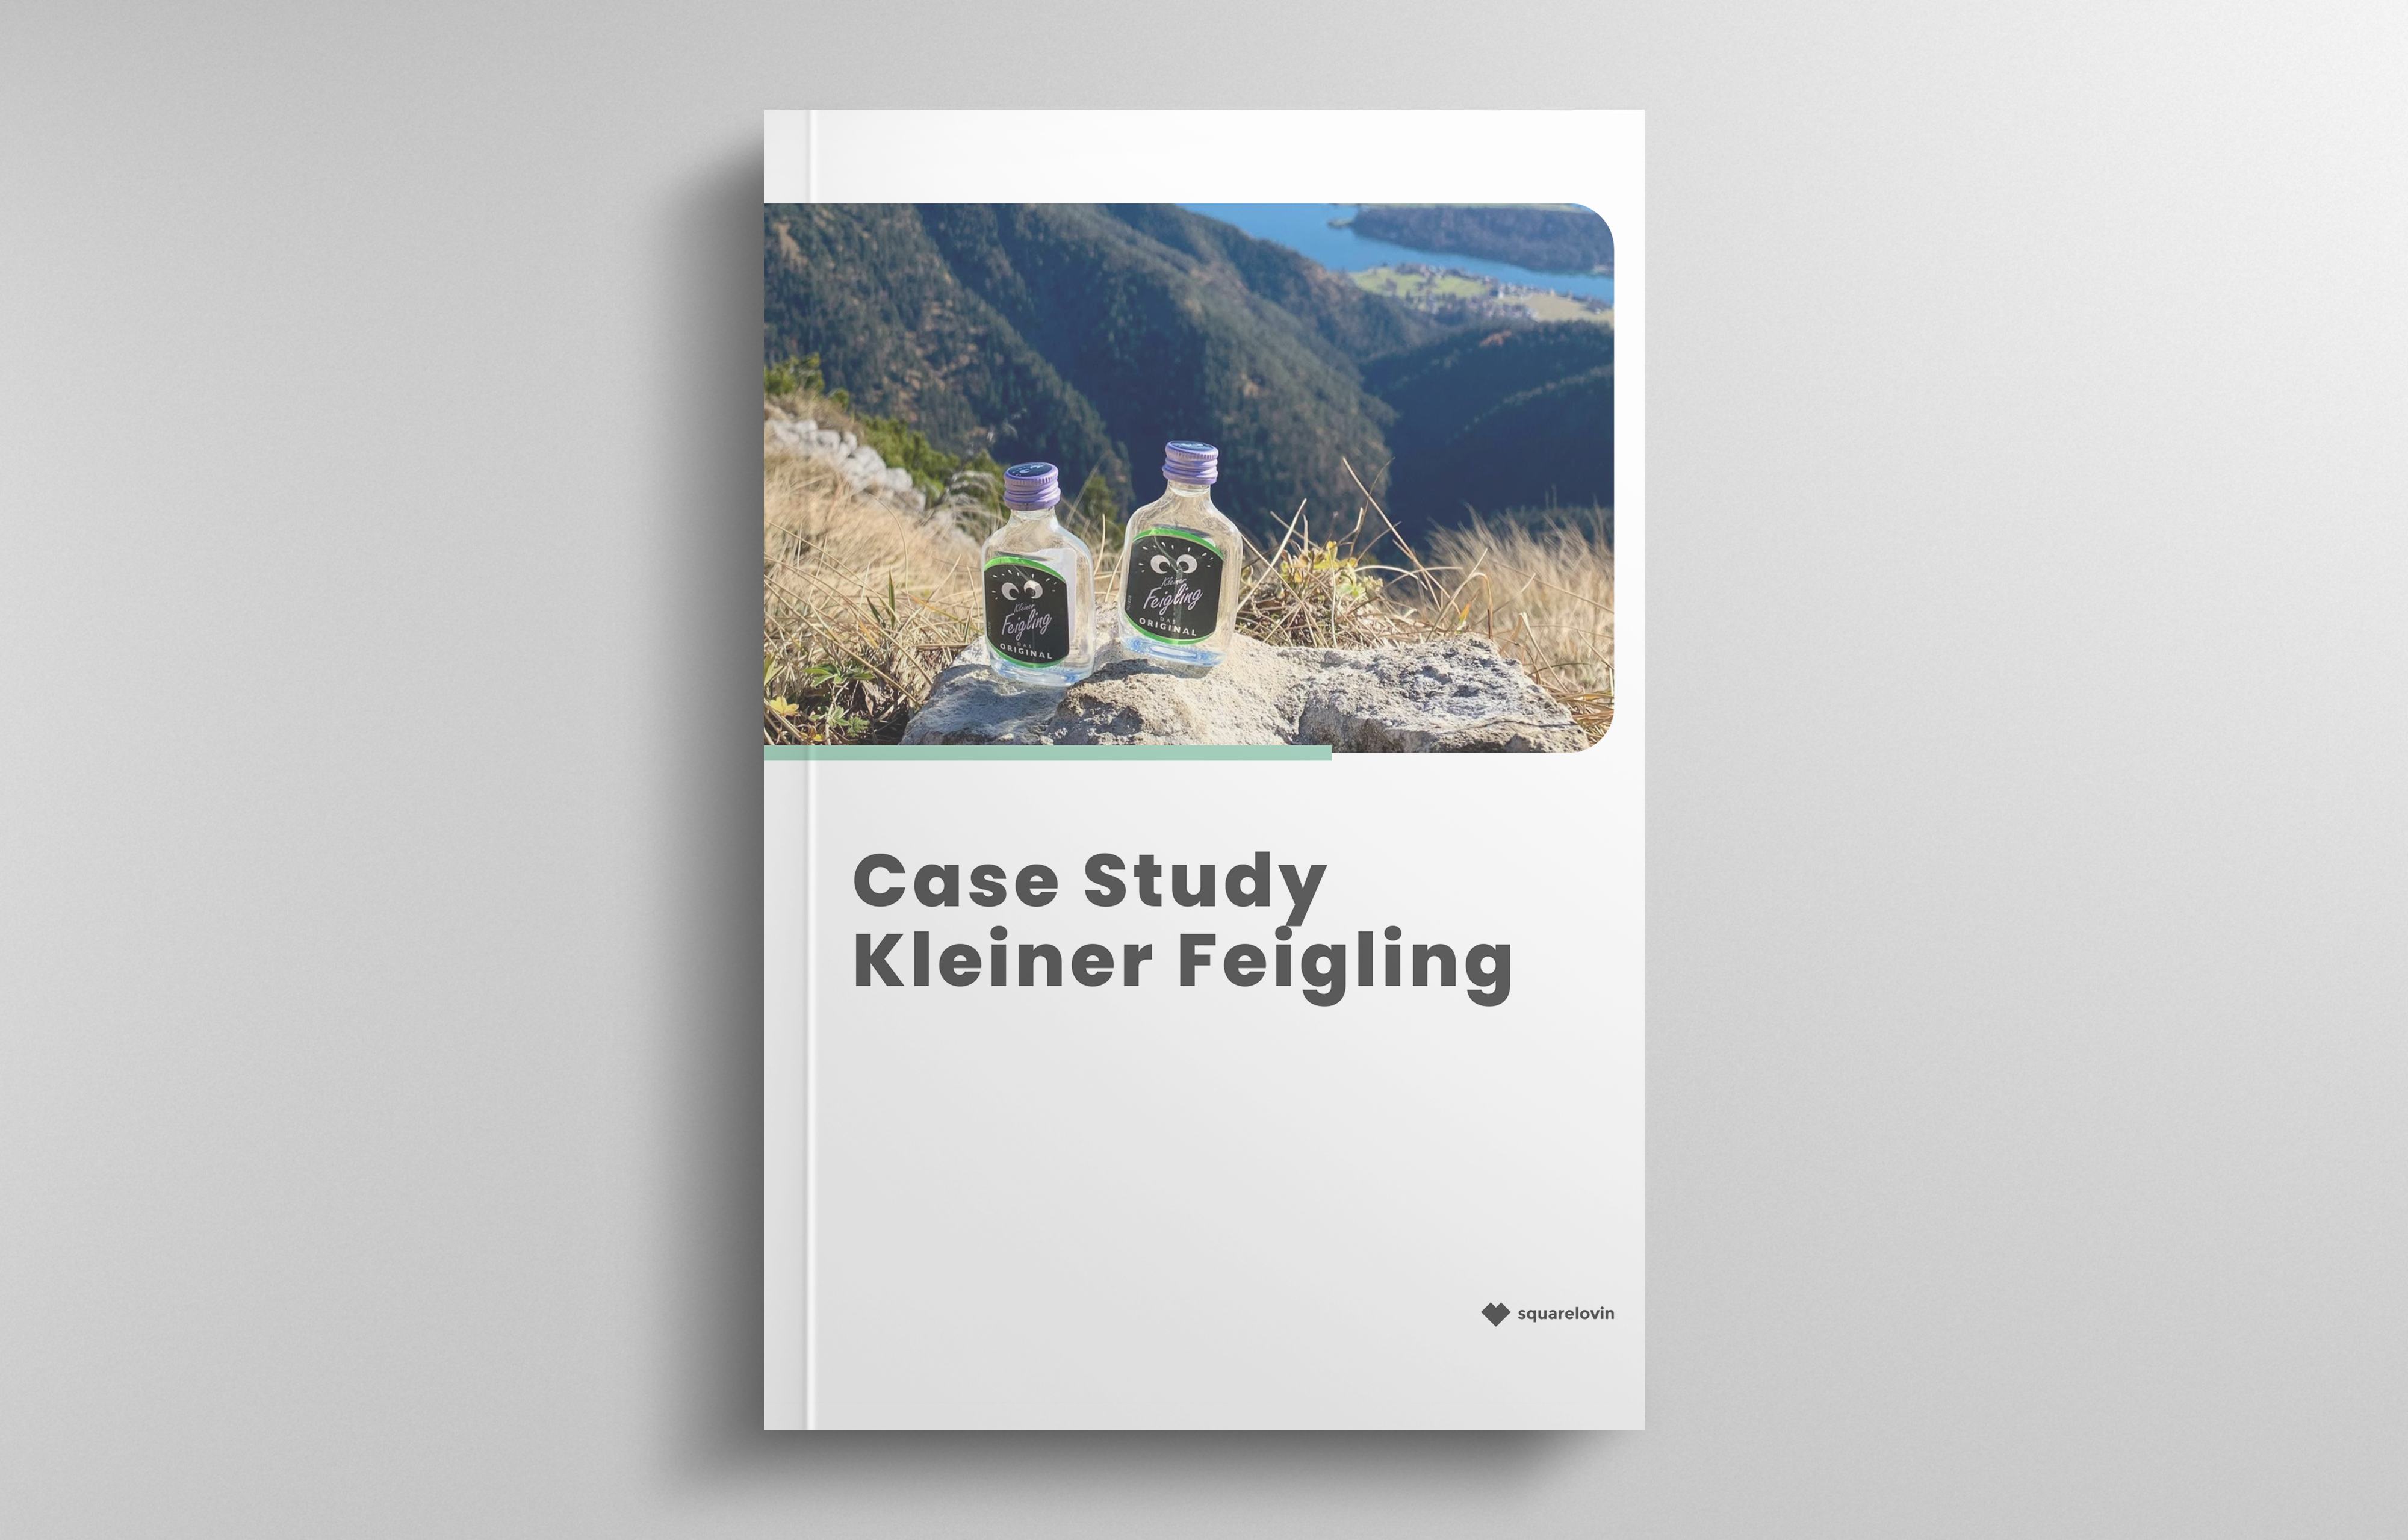 squarelovin_case-study_kleiner-feigling_header_de